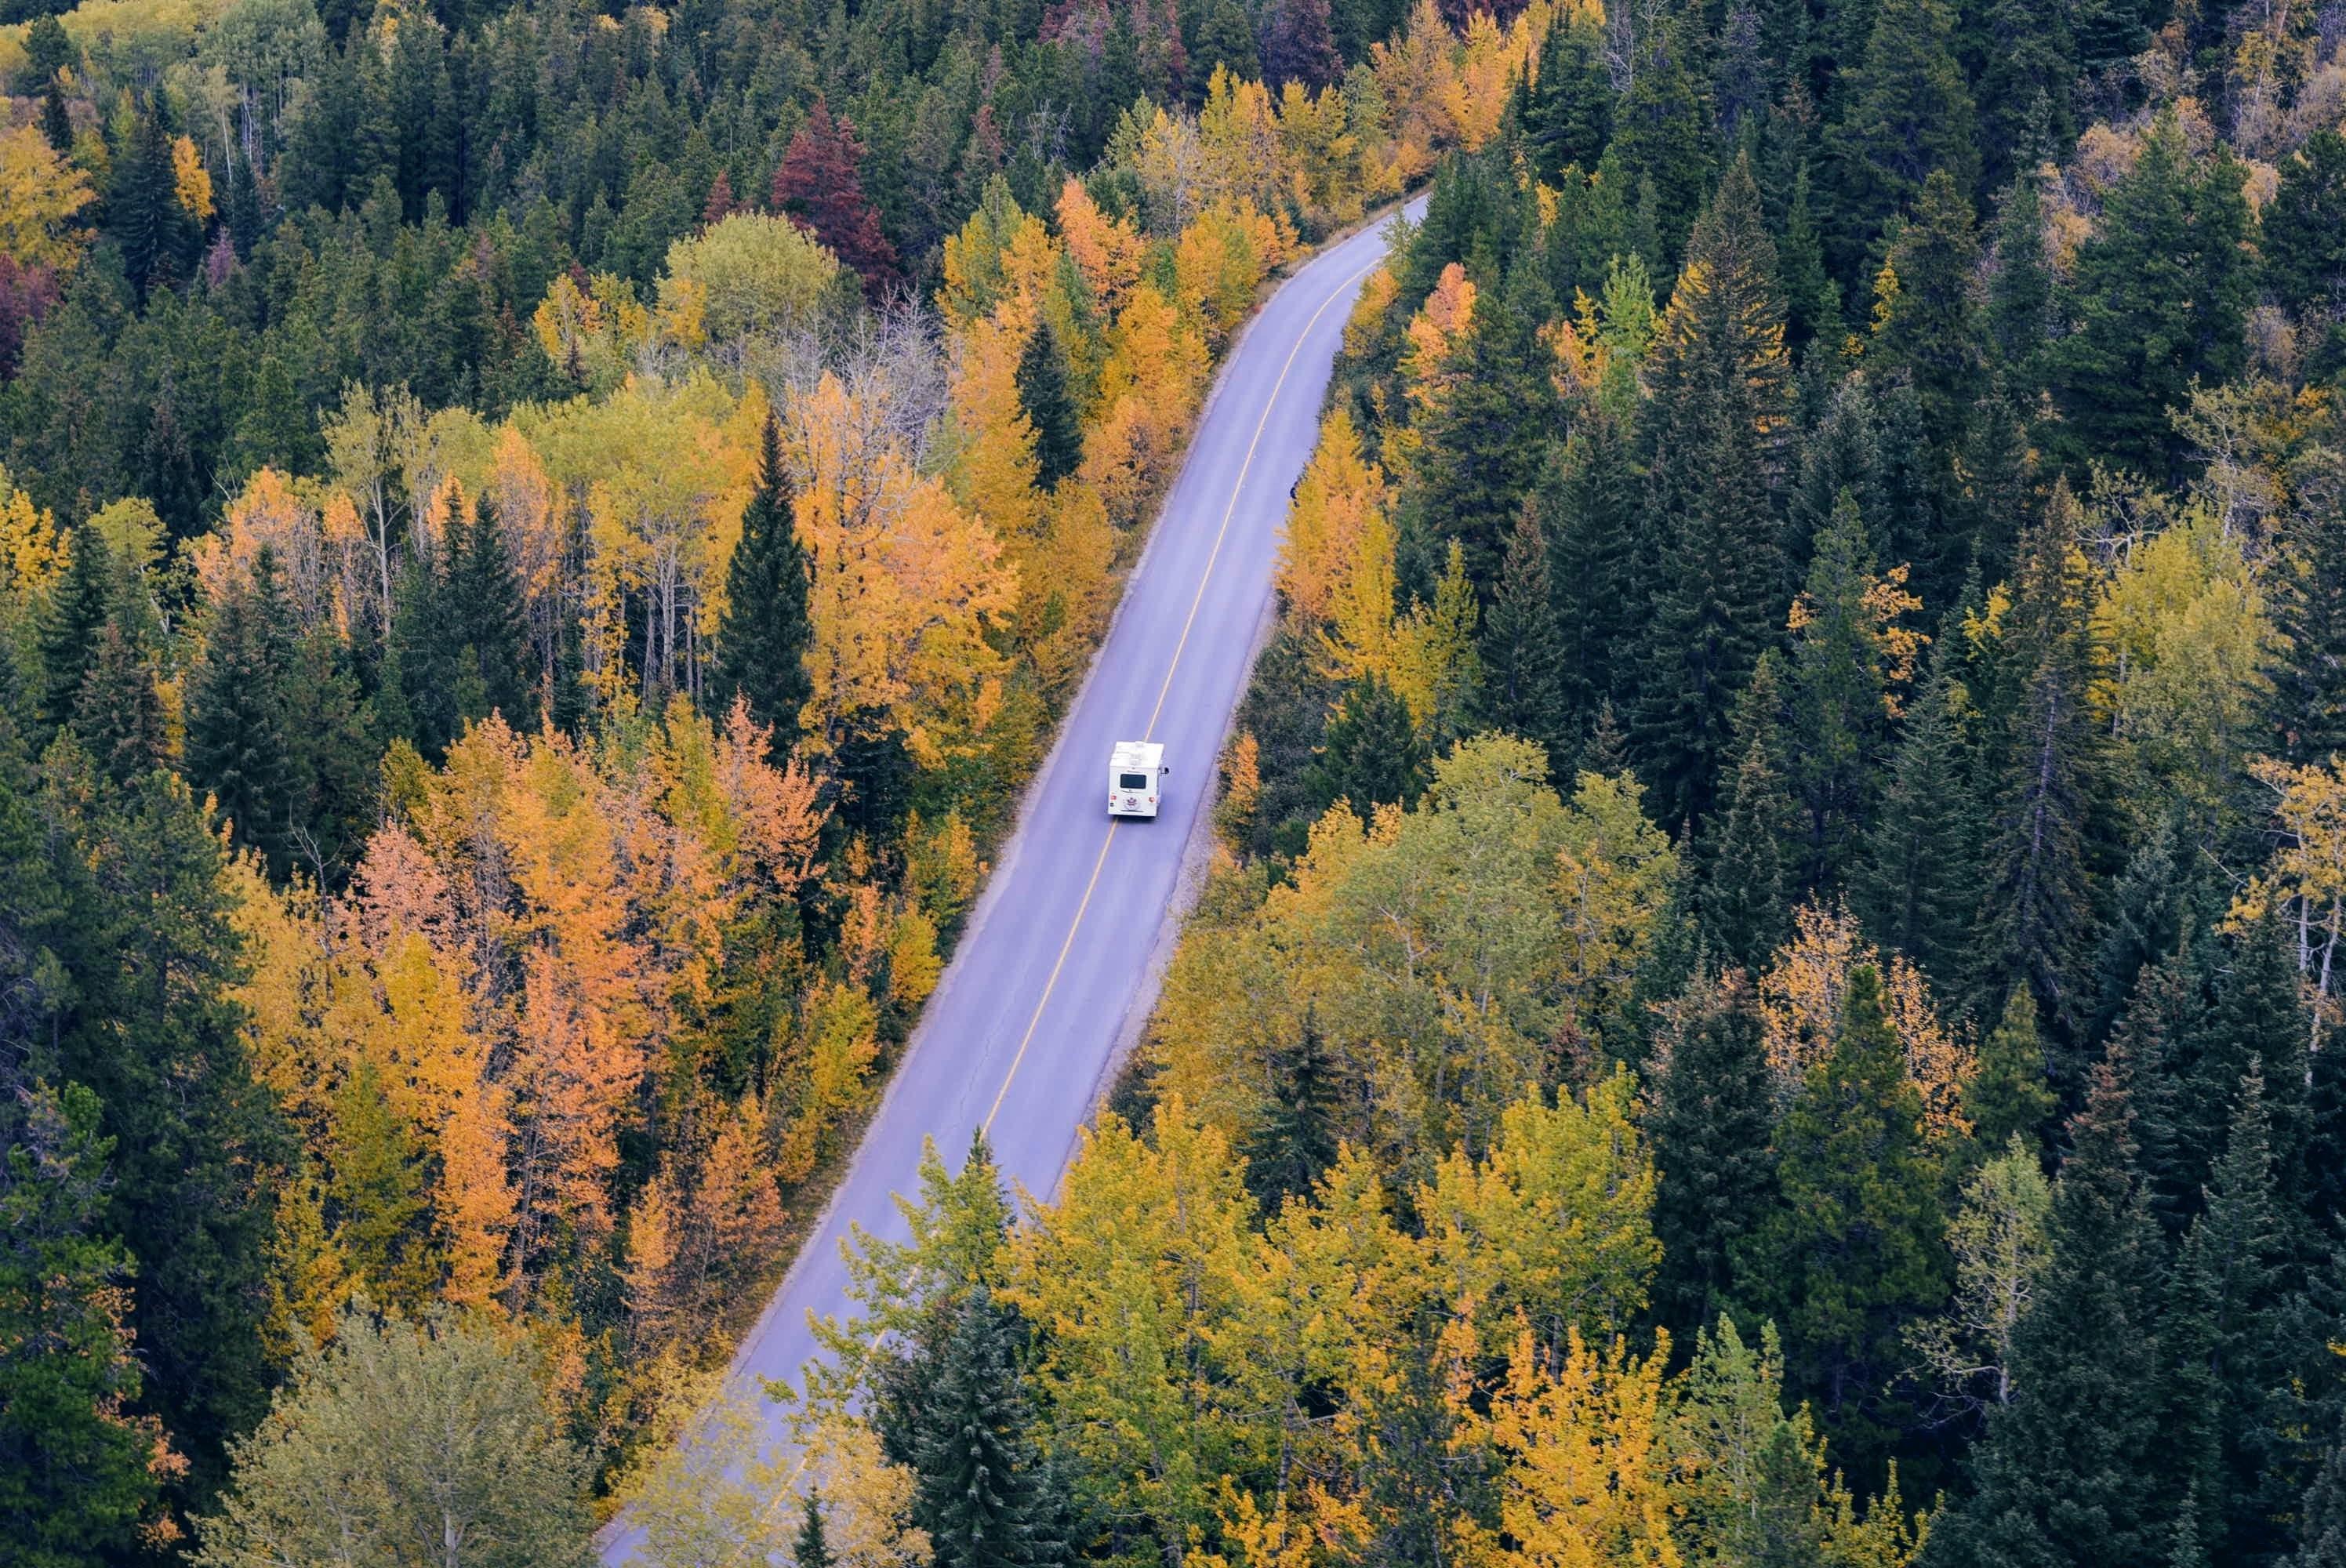 alt="Henkilöauto ajaa tiellä, jota molemmin puolin reunustaa syksyinen metsämaisema."